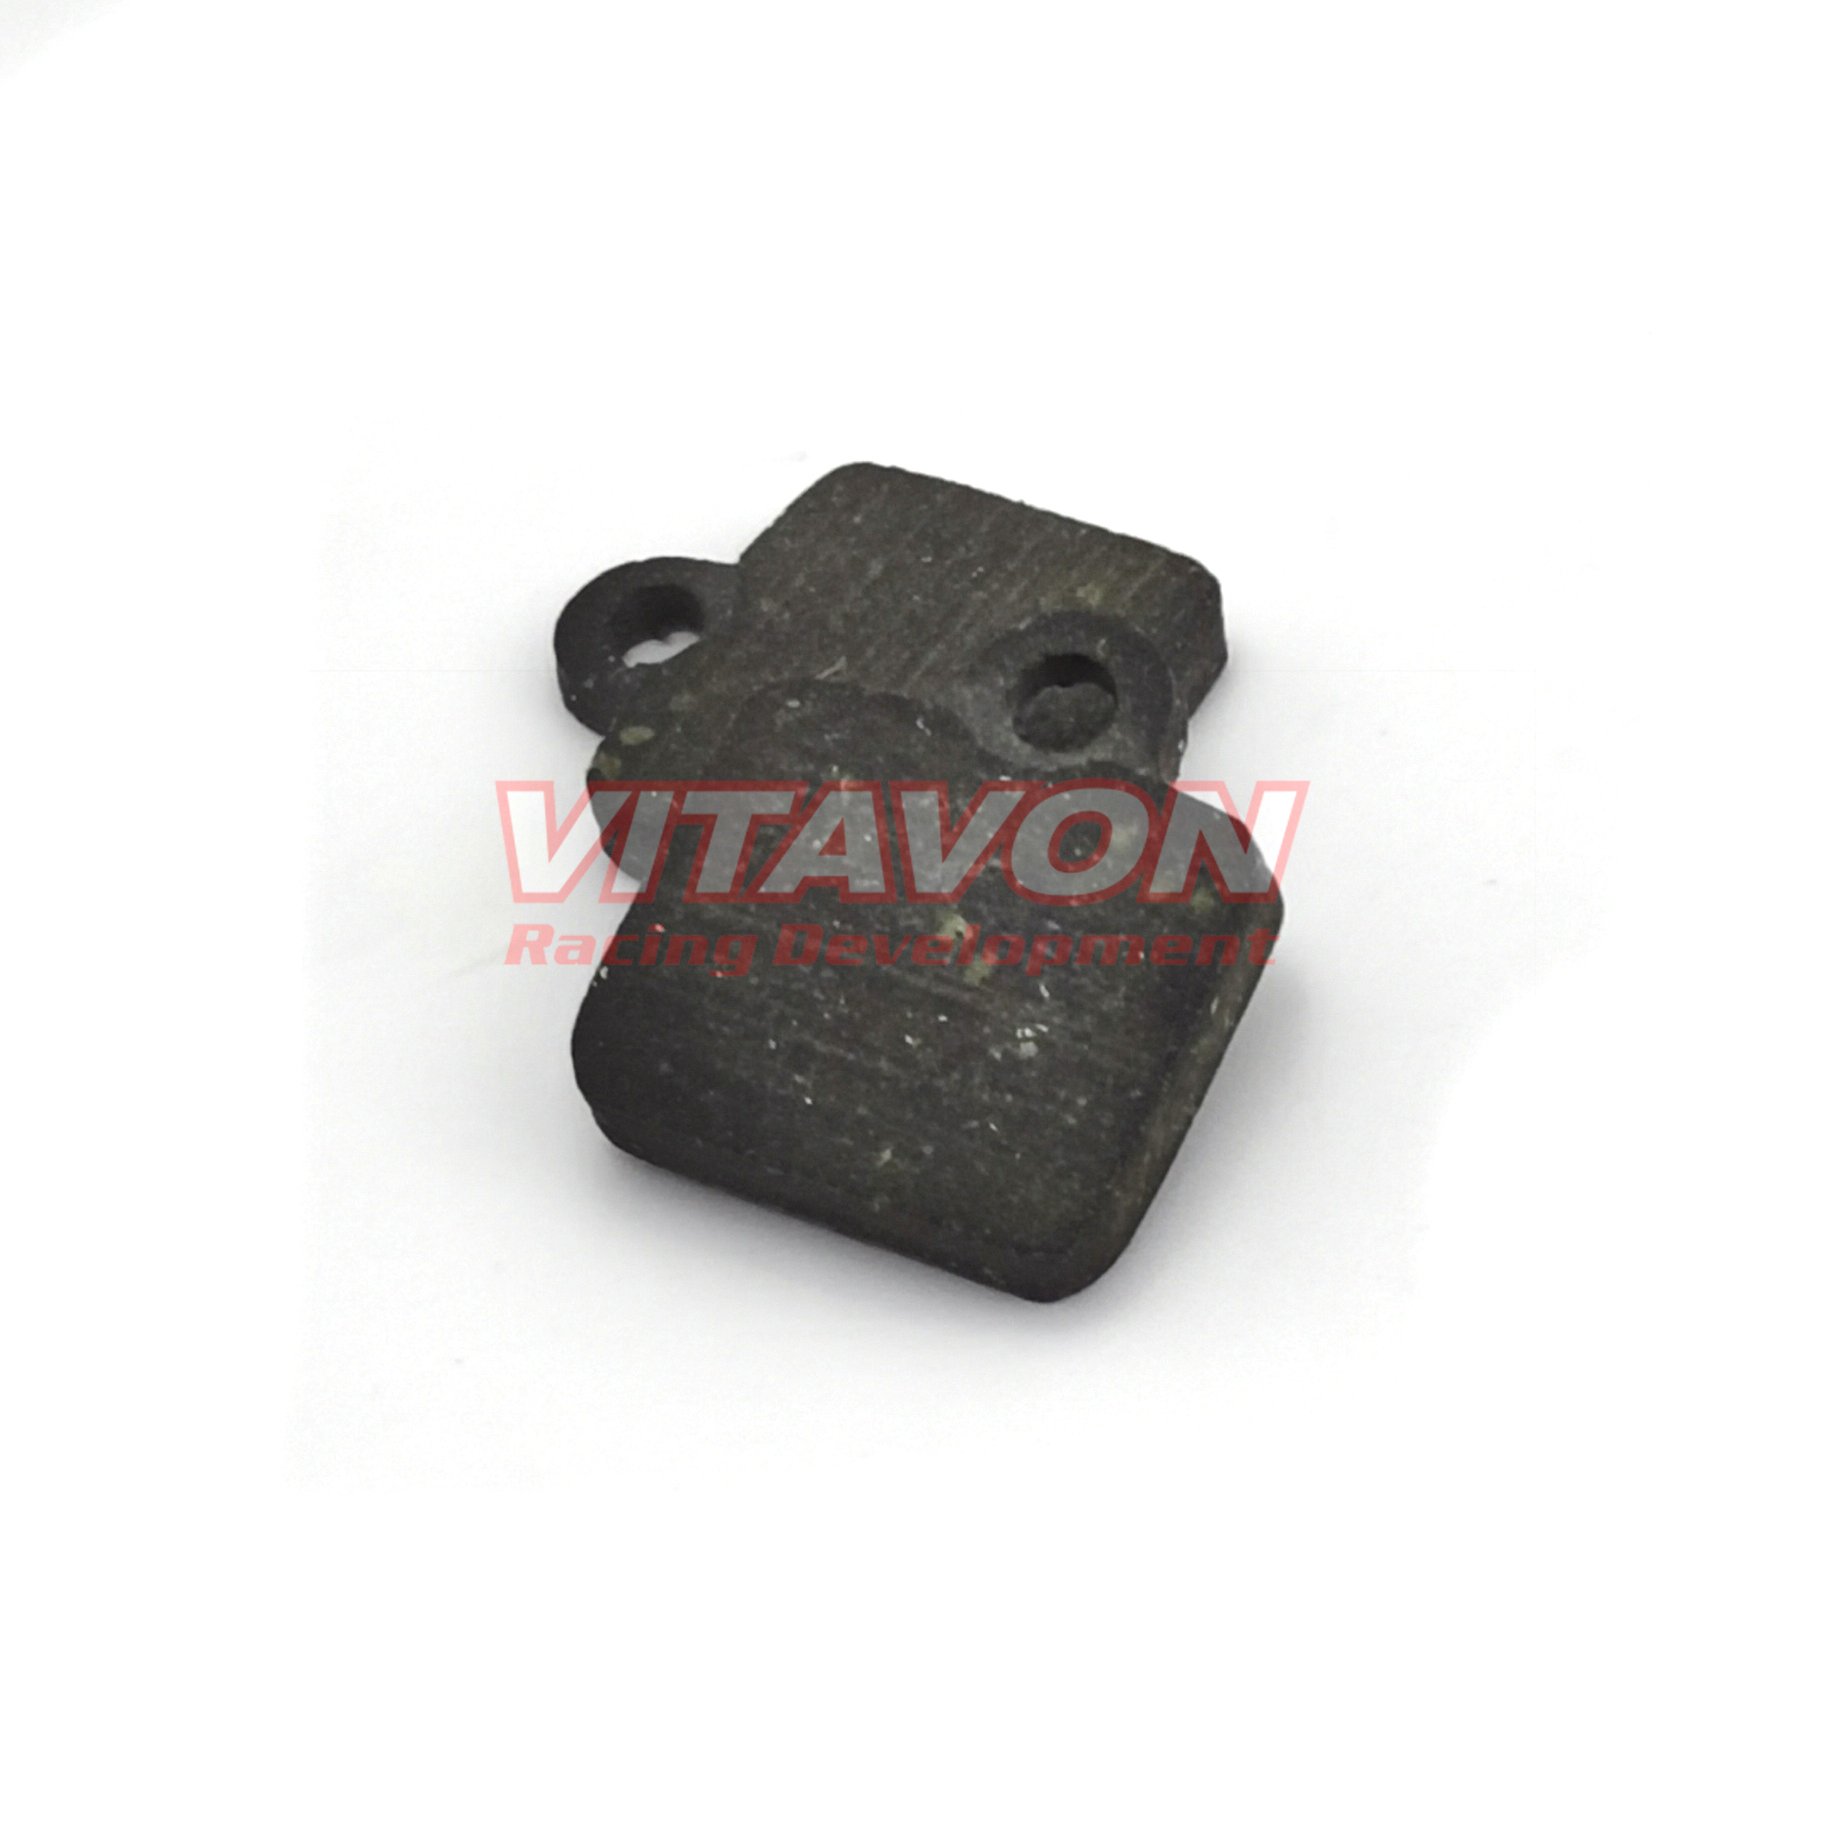 Brake Pad For VITAVON Brake Caliper For Promoto MX,Sells as 2pcs